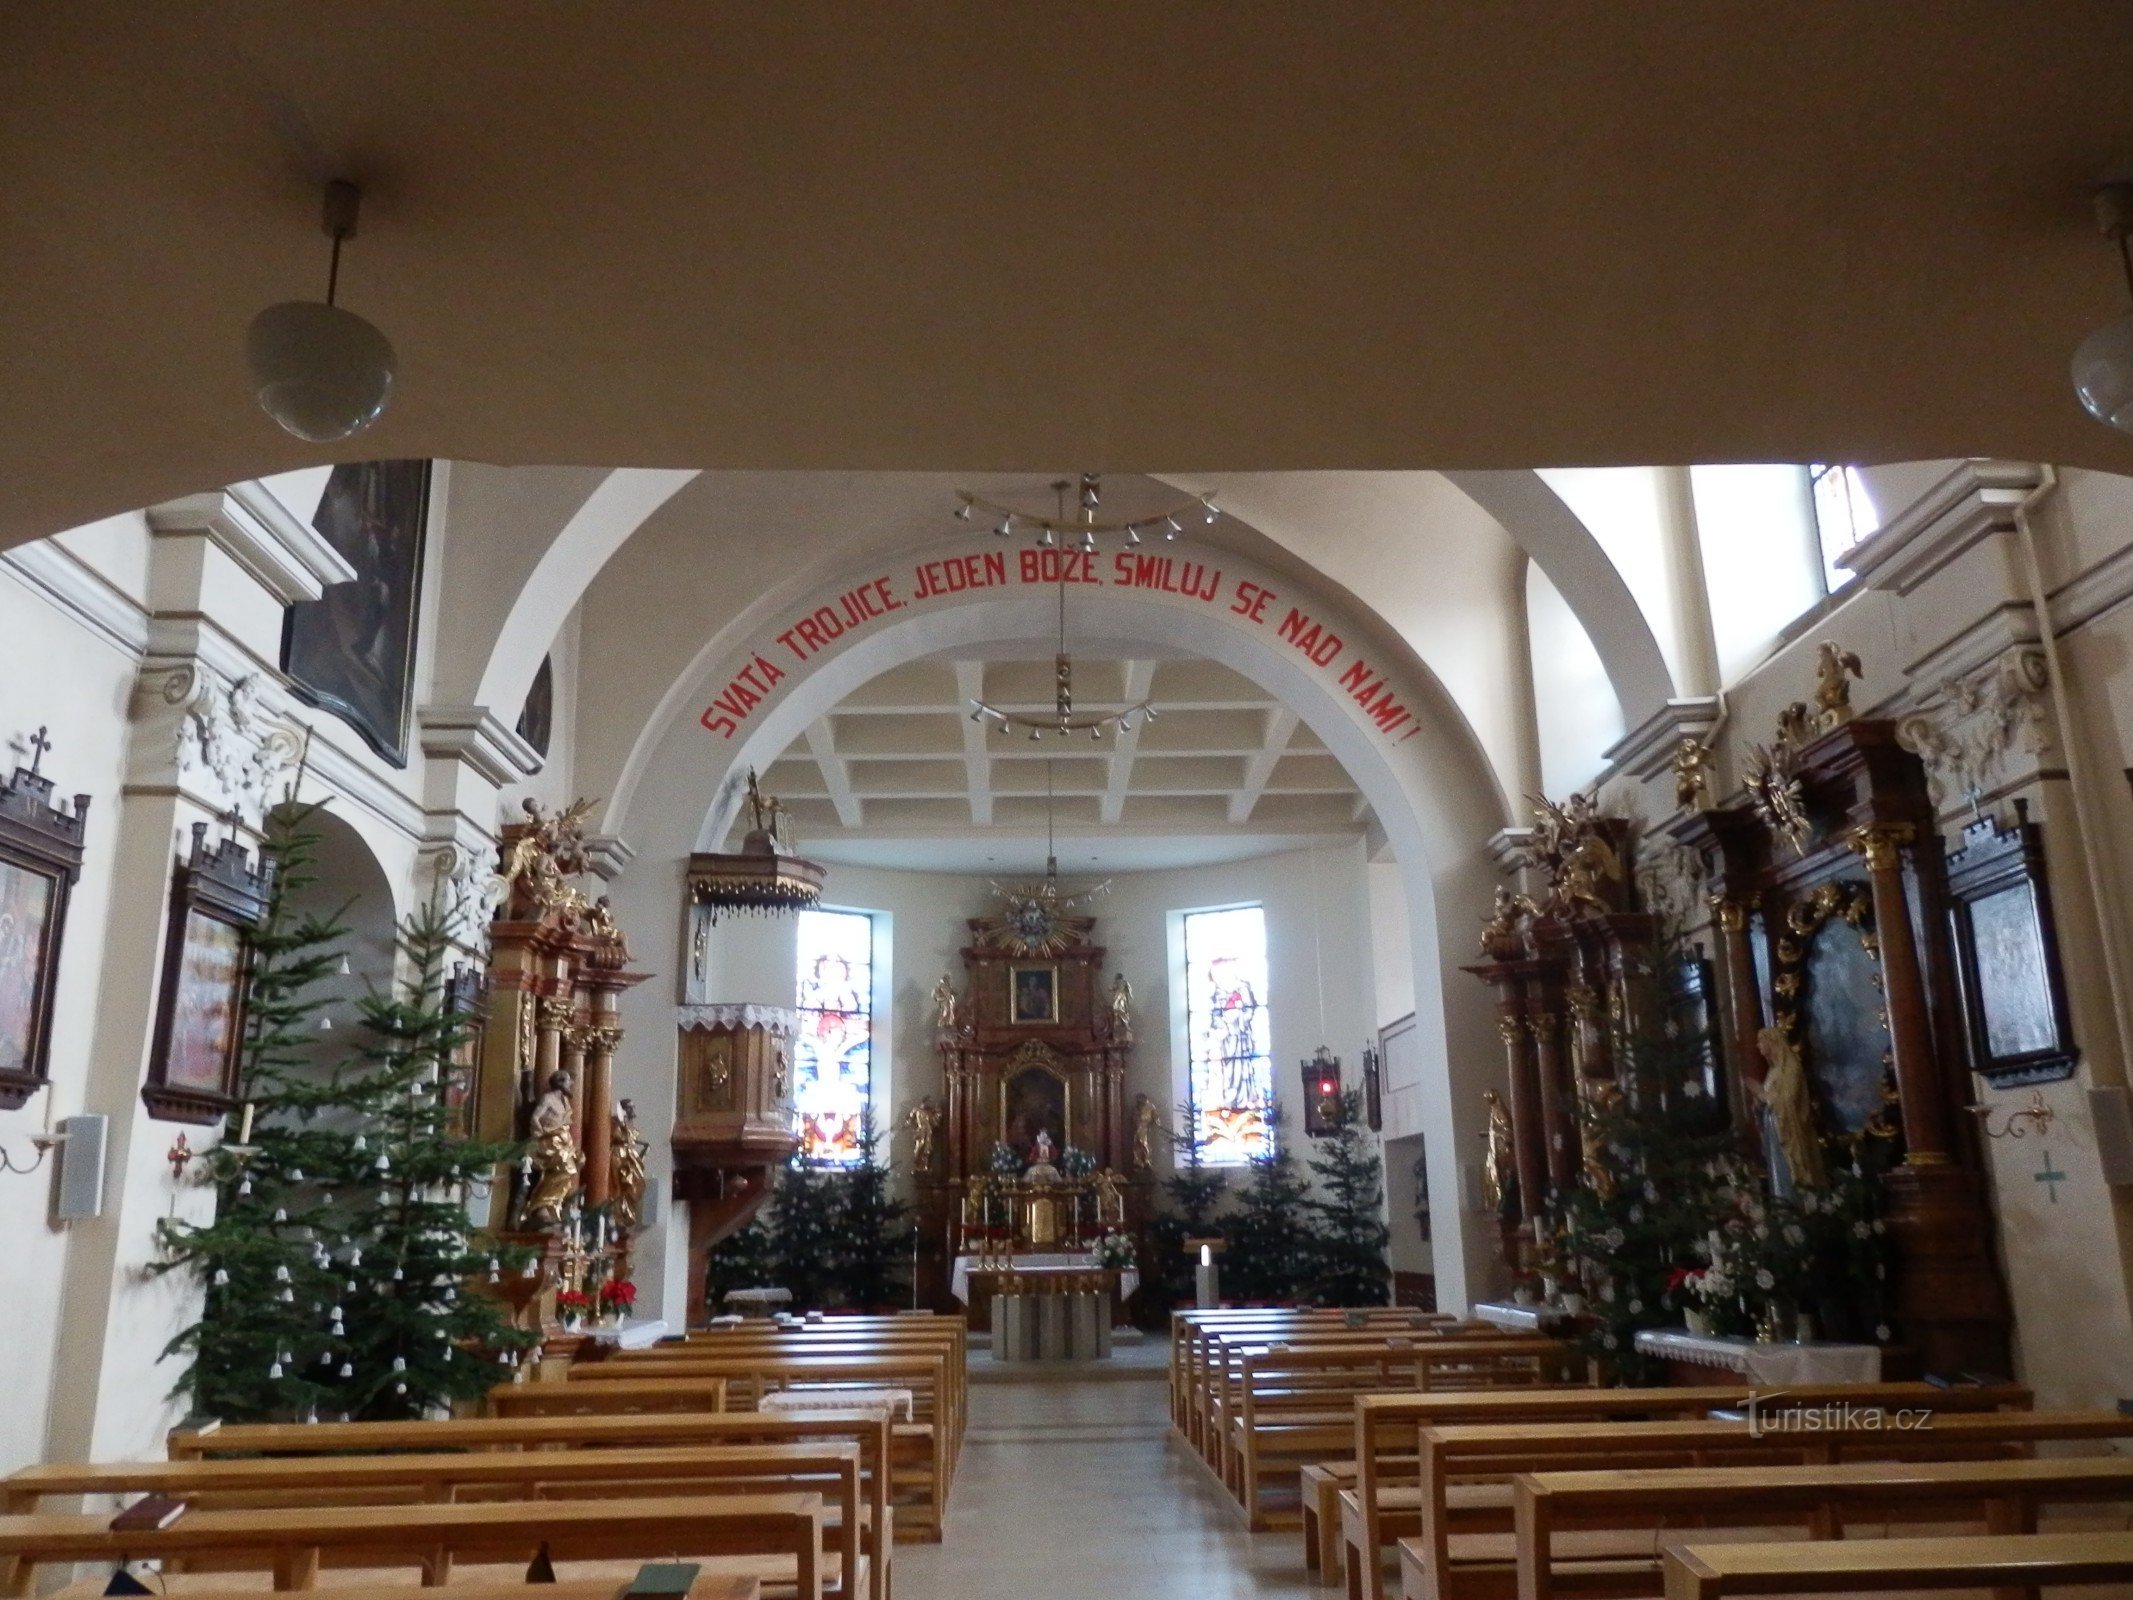 Kerk van de Heilige Drie-eenheid in Střelice